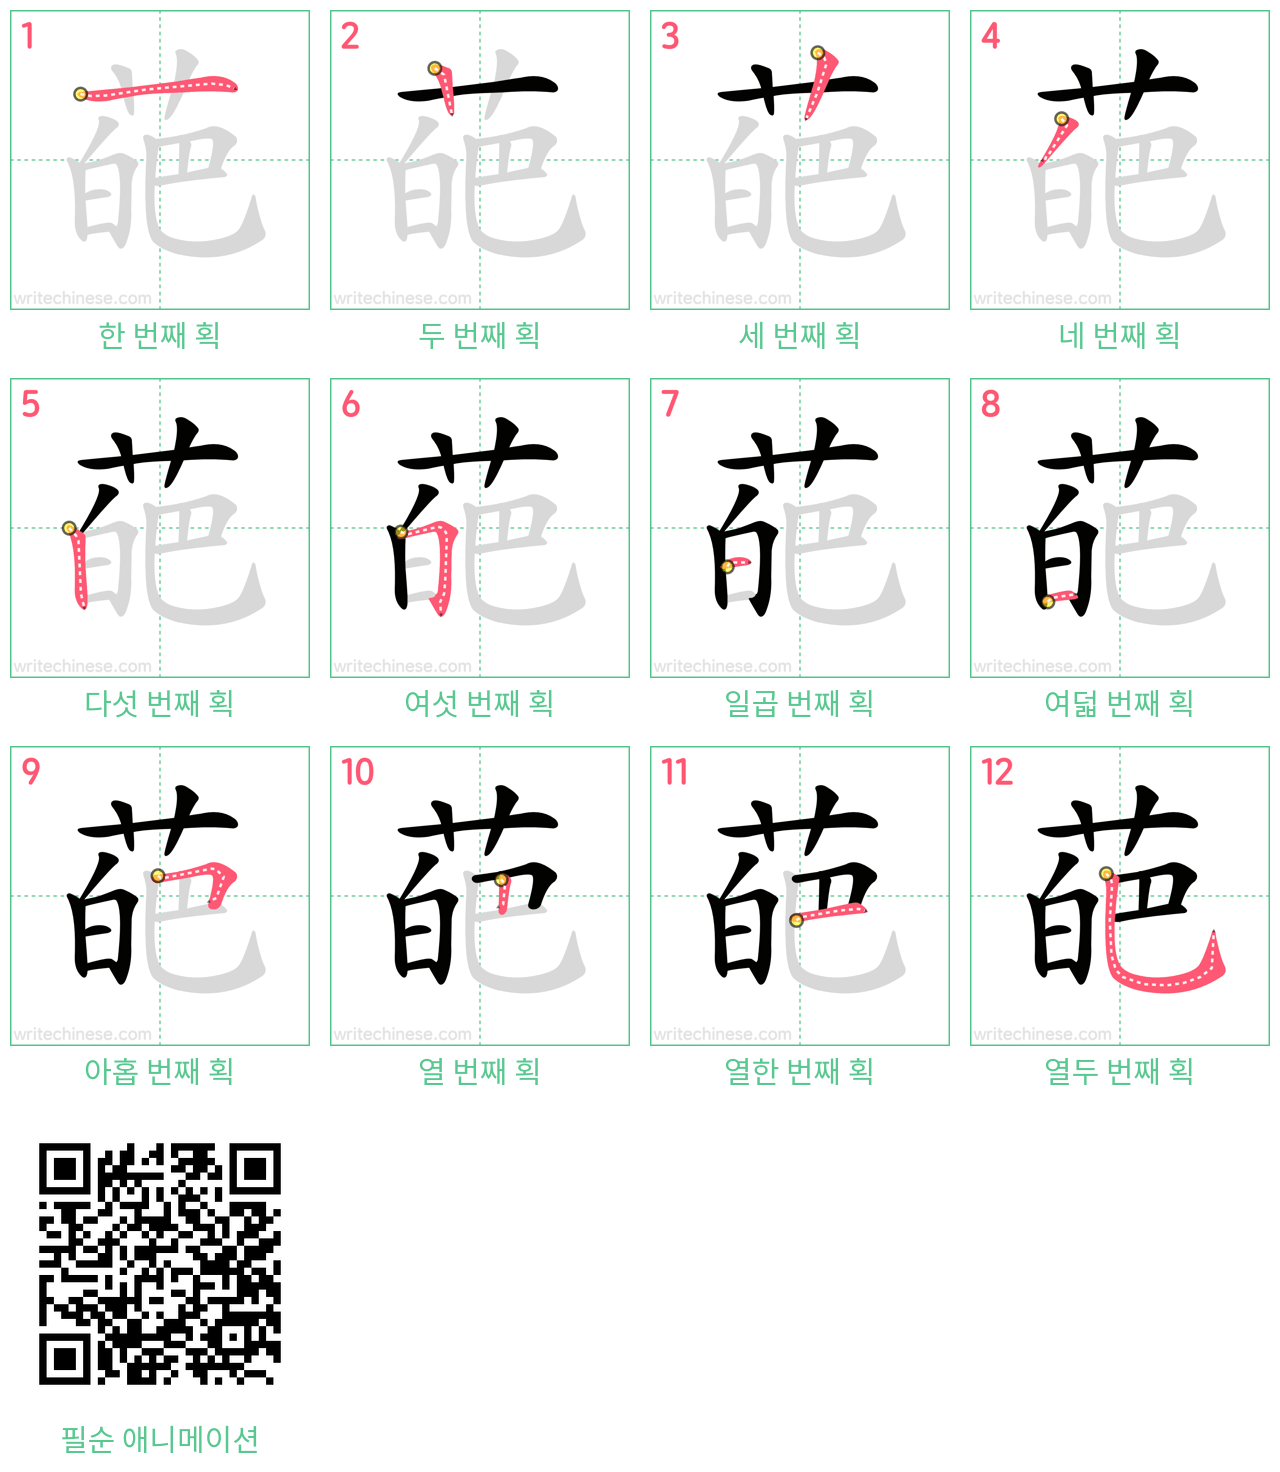 葩 step-by-step stroke order diagrams